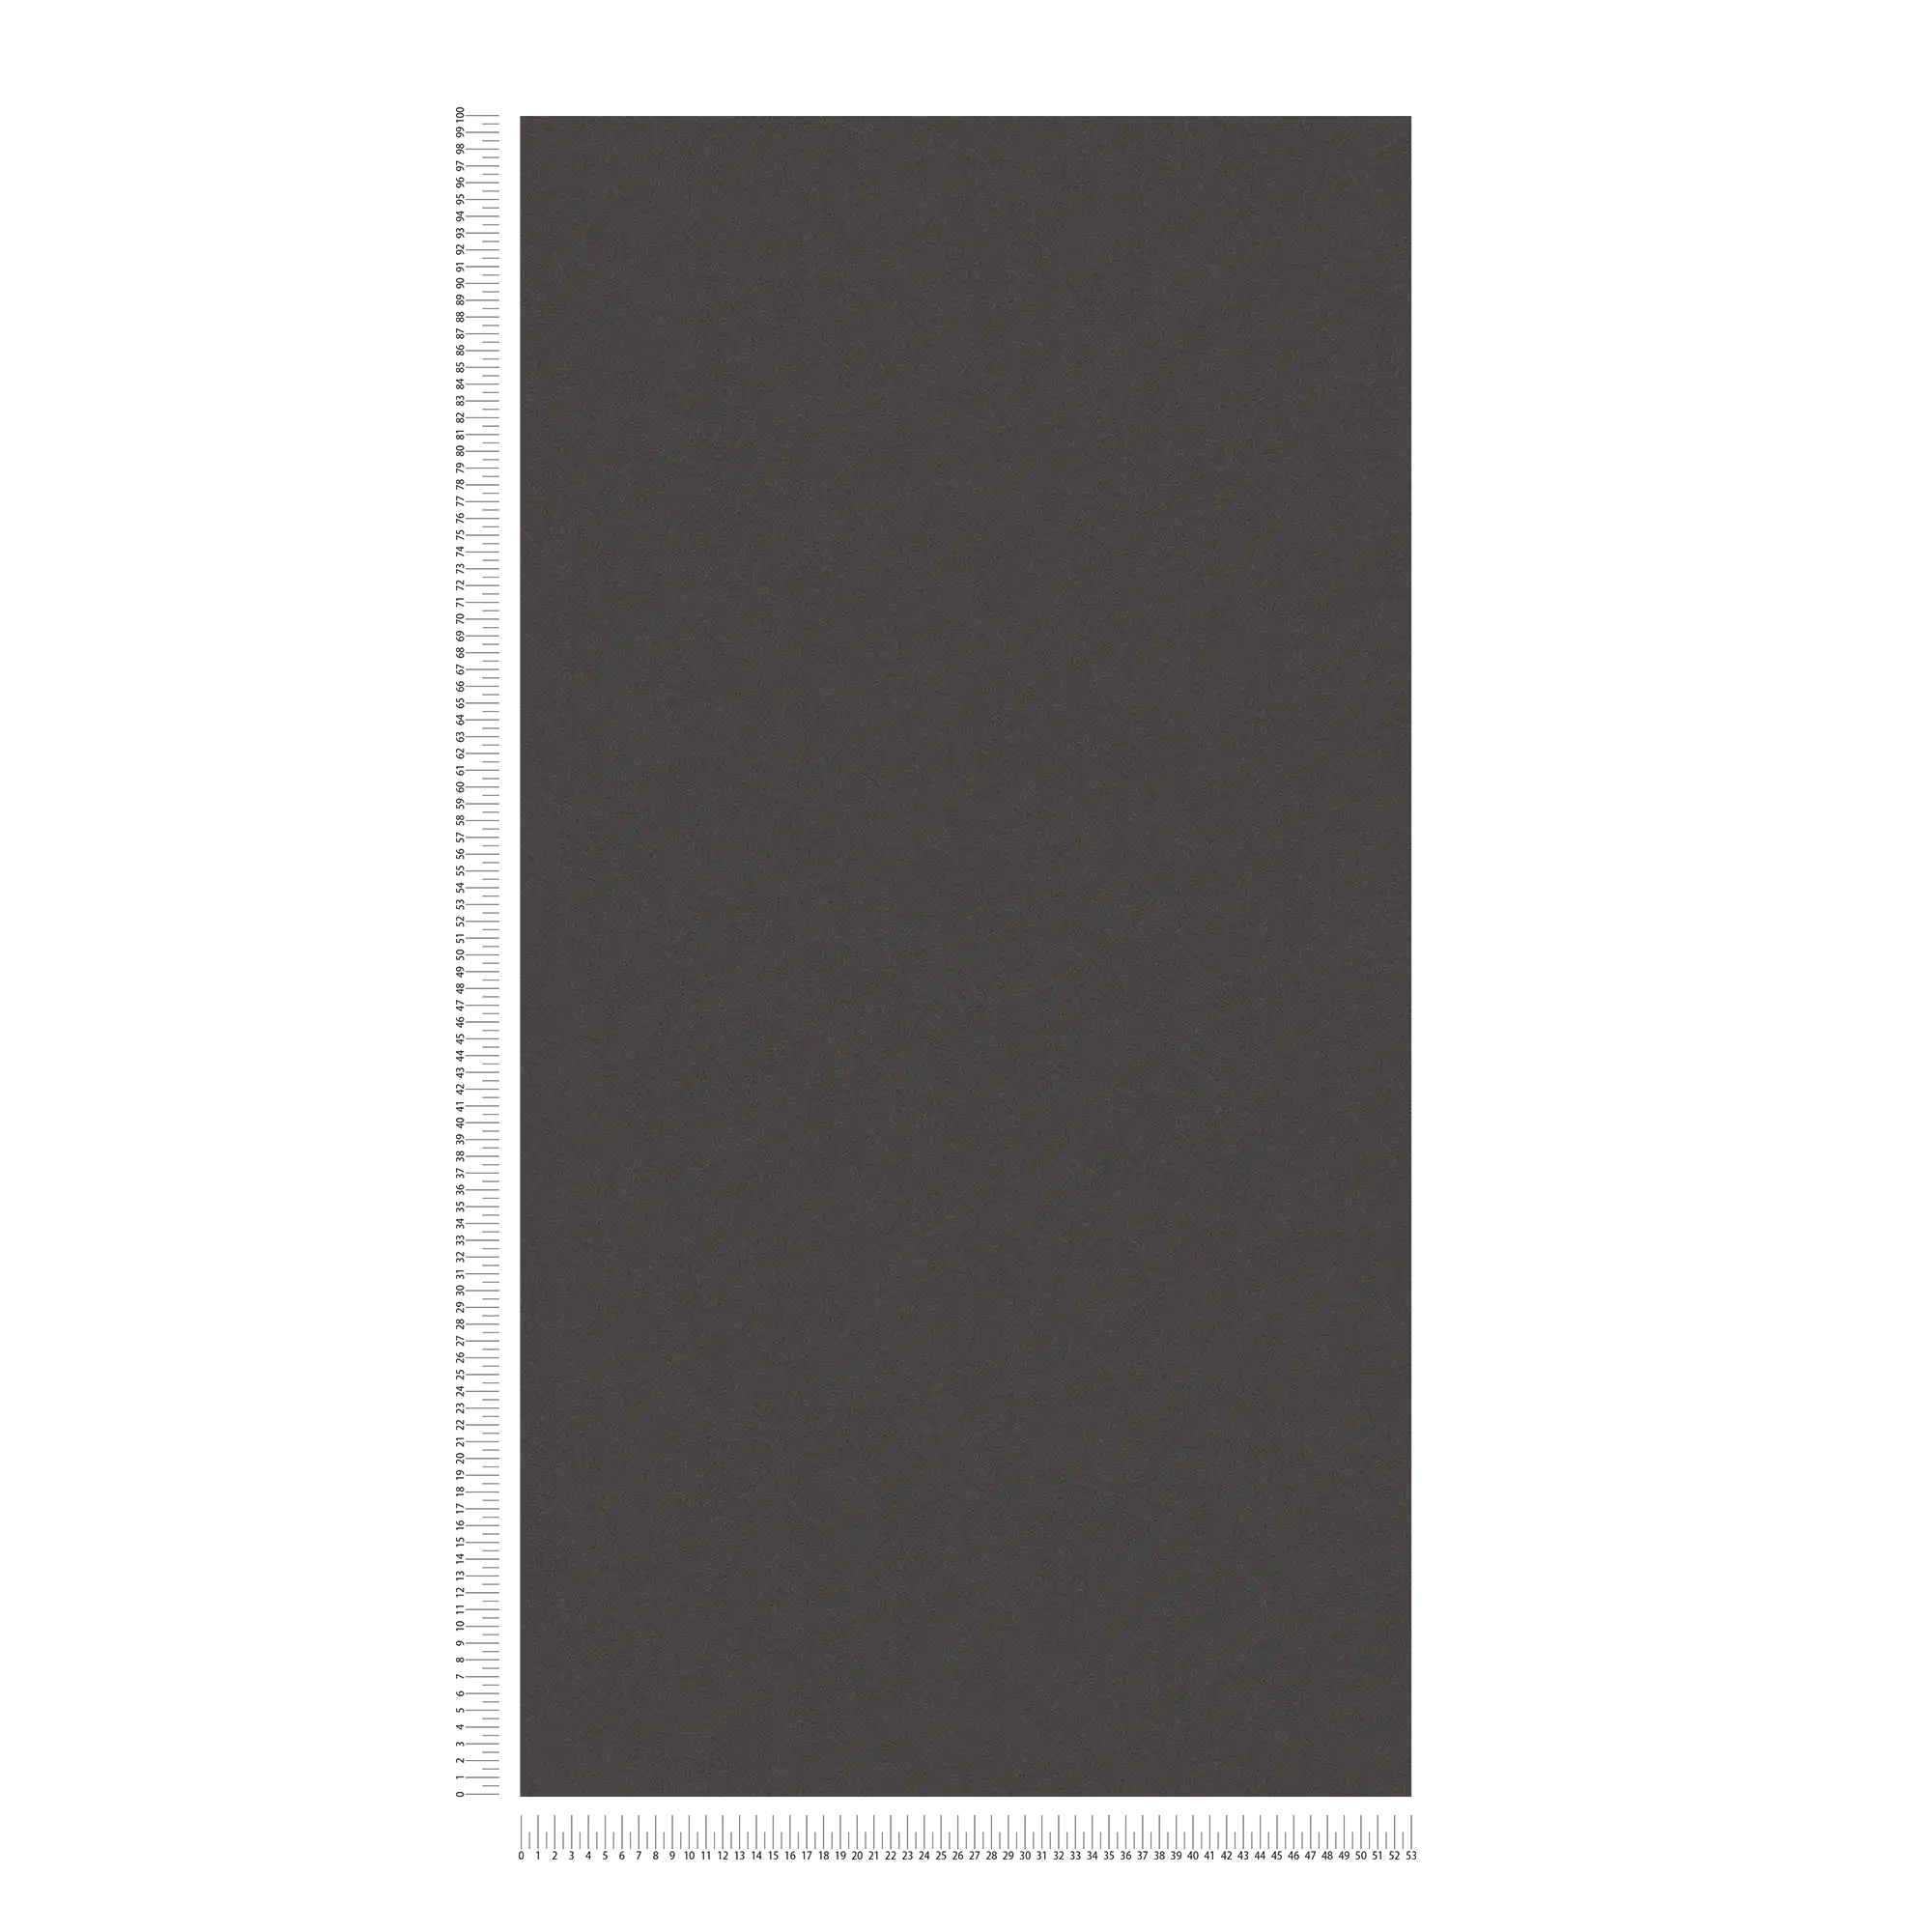             Papier peint uni avec structure de surface discrète - noir
        